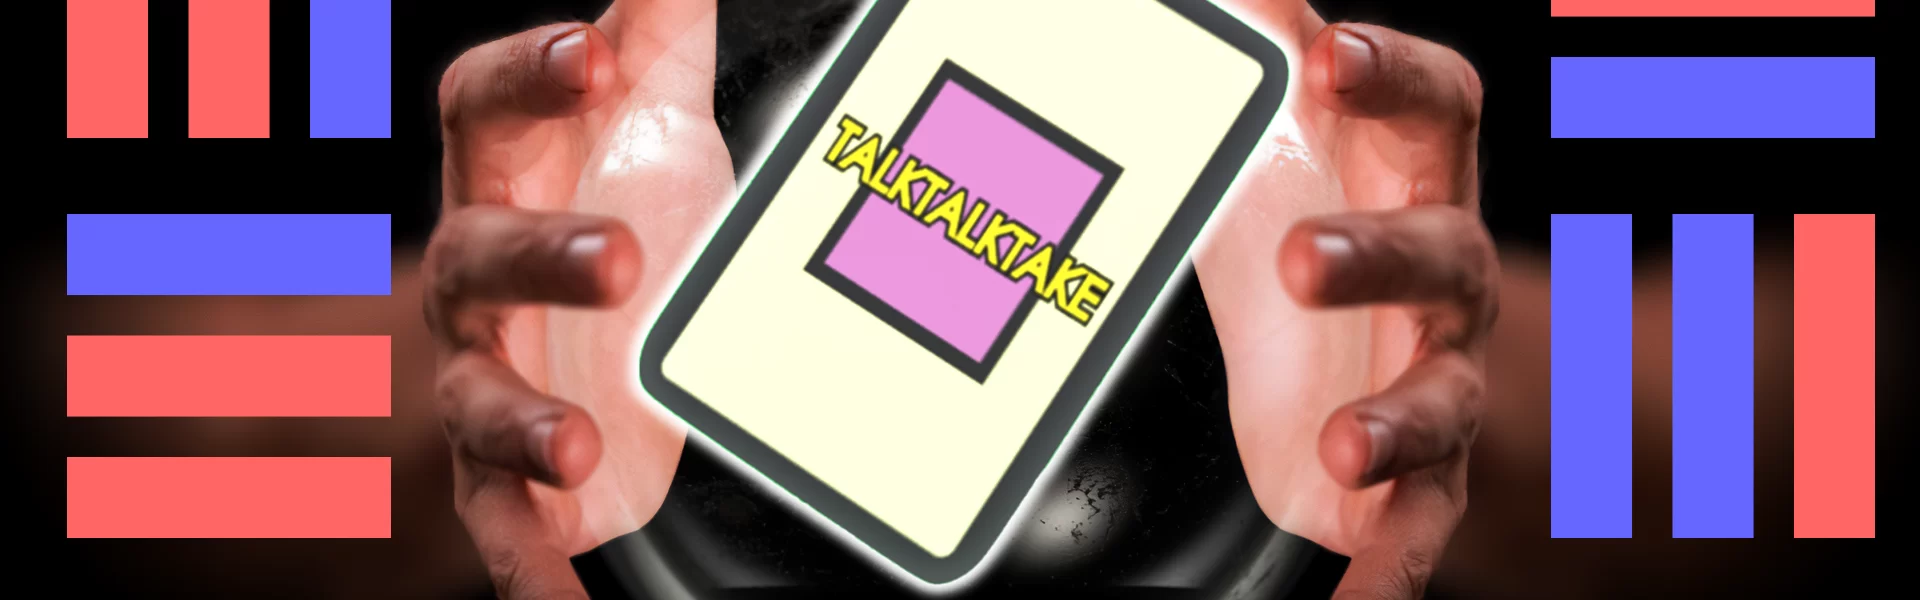 総合コンテンツサイト「竜平堂 (西野竜平)」の対話型透視ゲーム「TALKTALKTAKE」のバナー画像